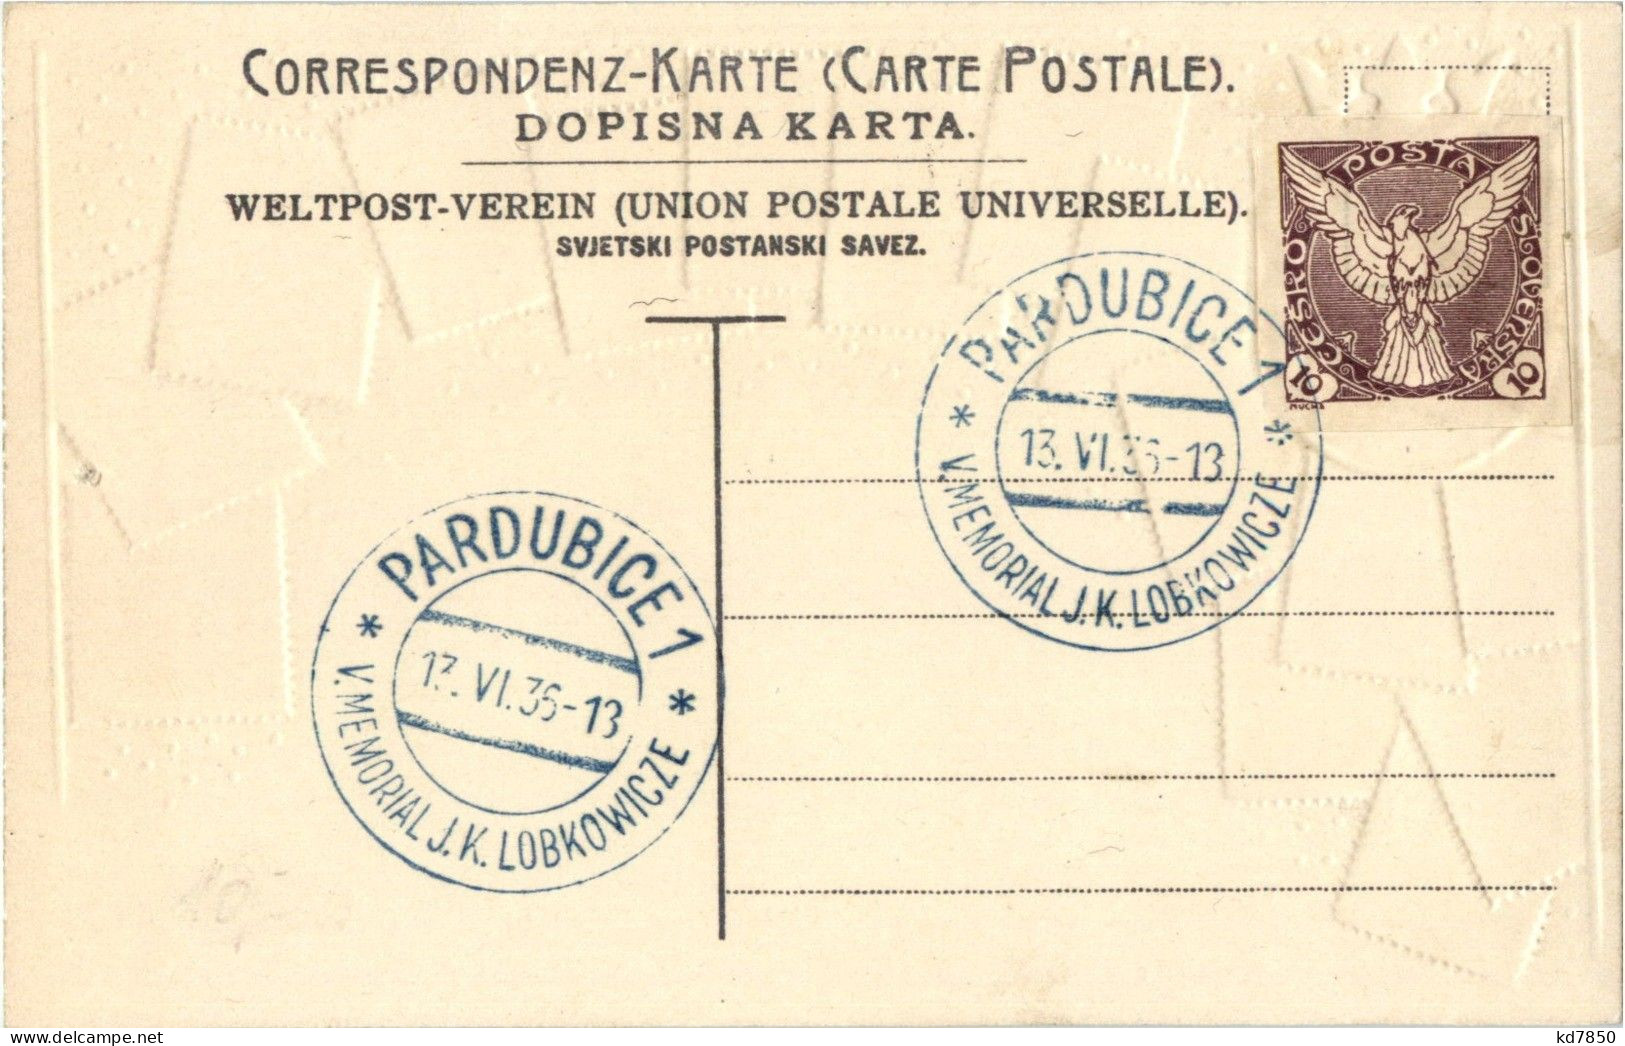 Briefmarken - Stamps - Prägekarte - Timbres (représentations)